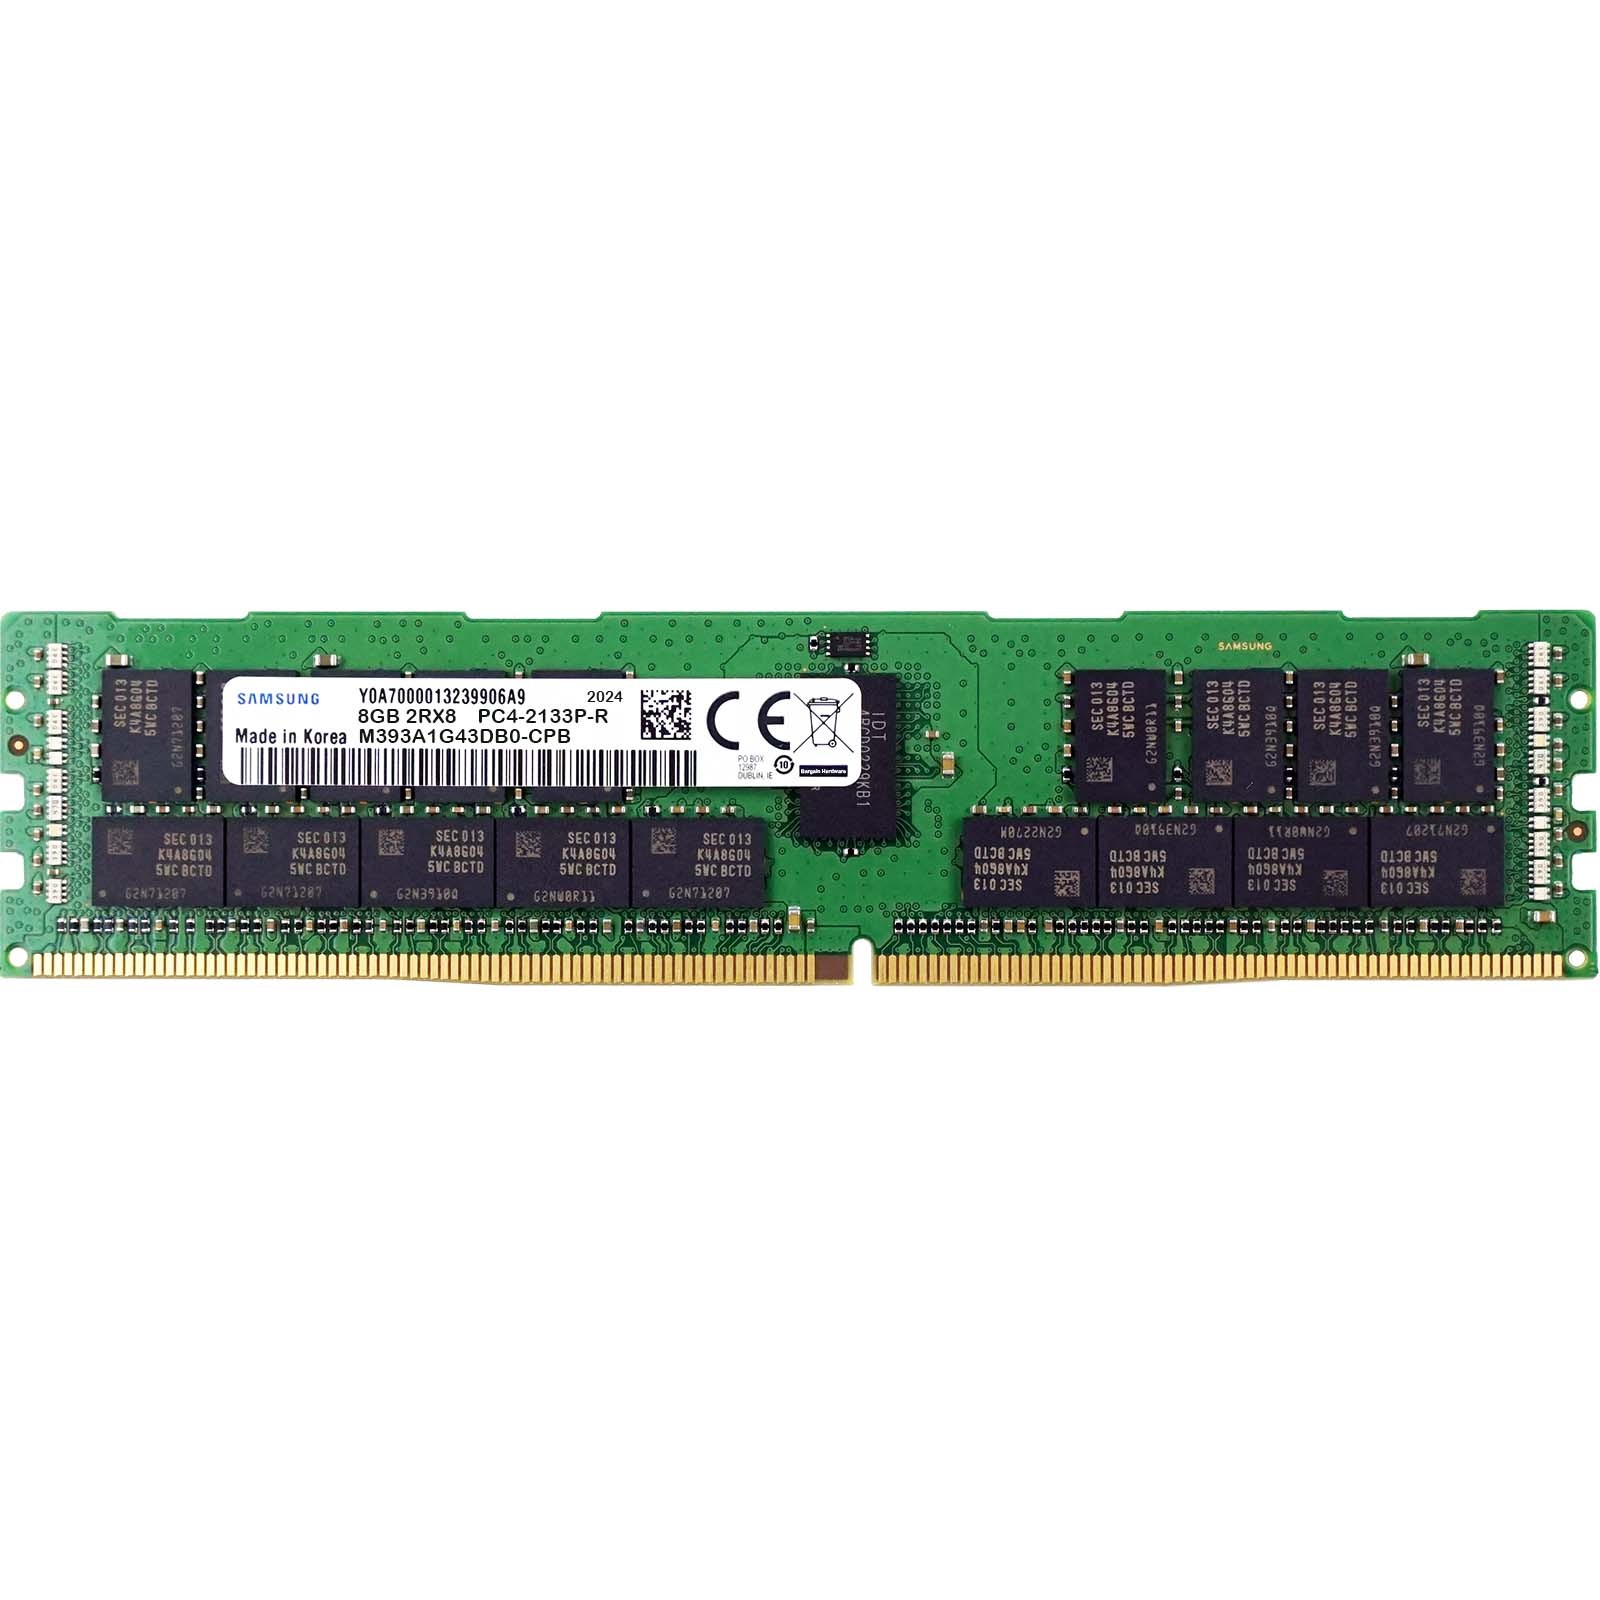 Samsung (M393A1G43DB0-CPB) - 8GB PC4-17000P-R (2RX8, DDR4-2133MHz) RAM